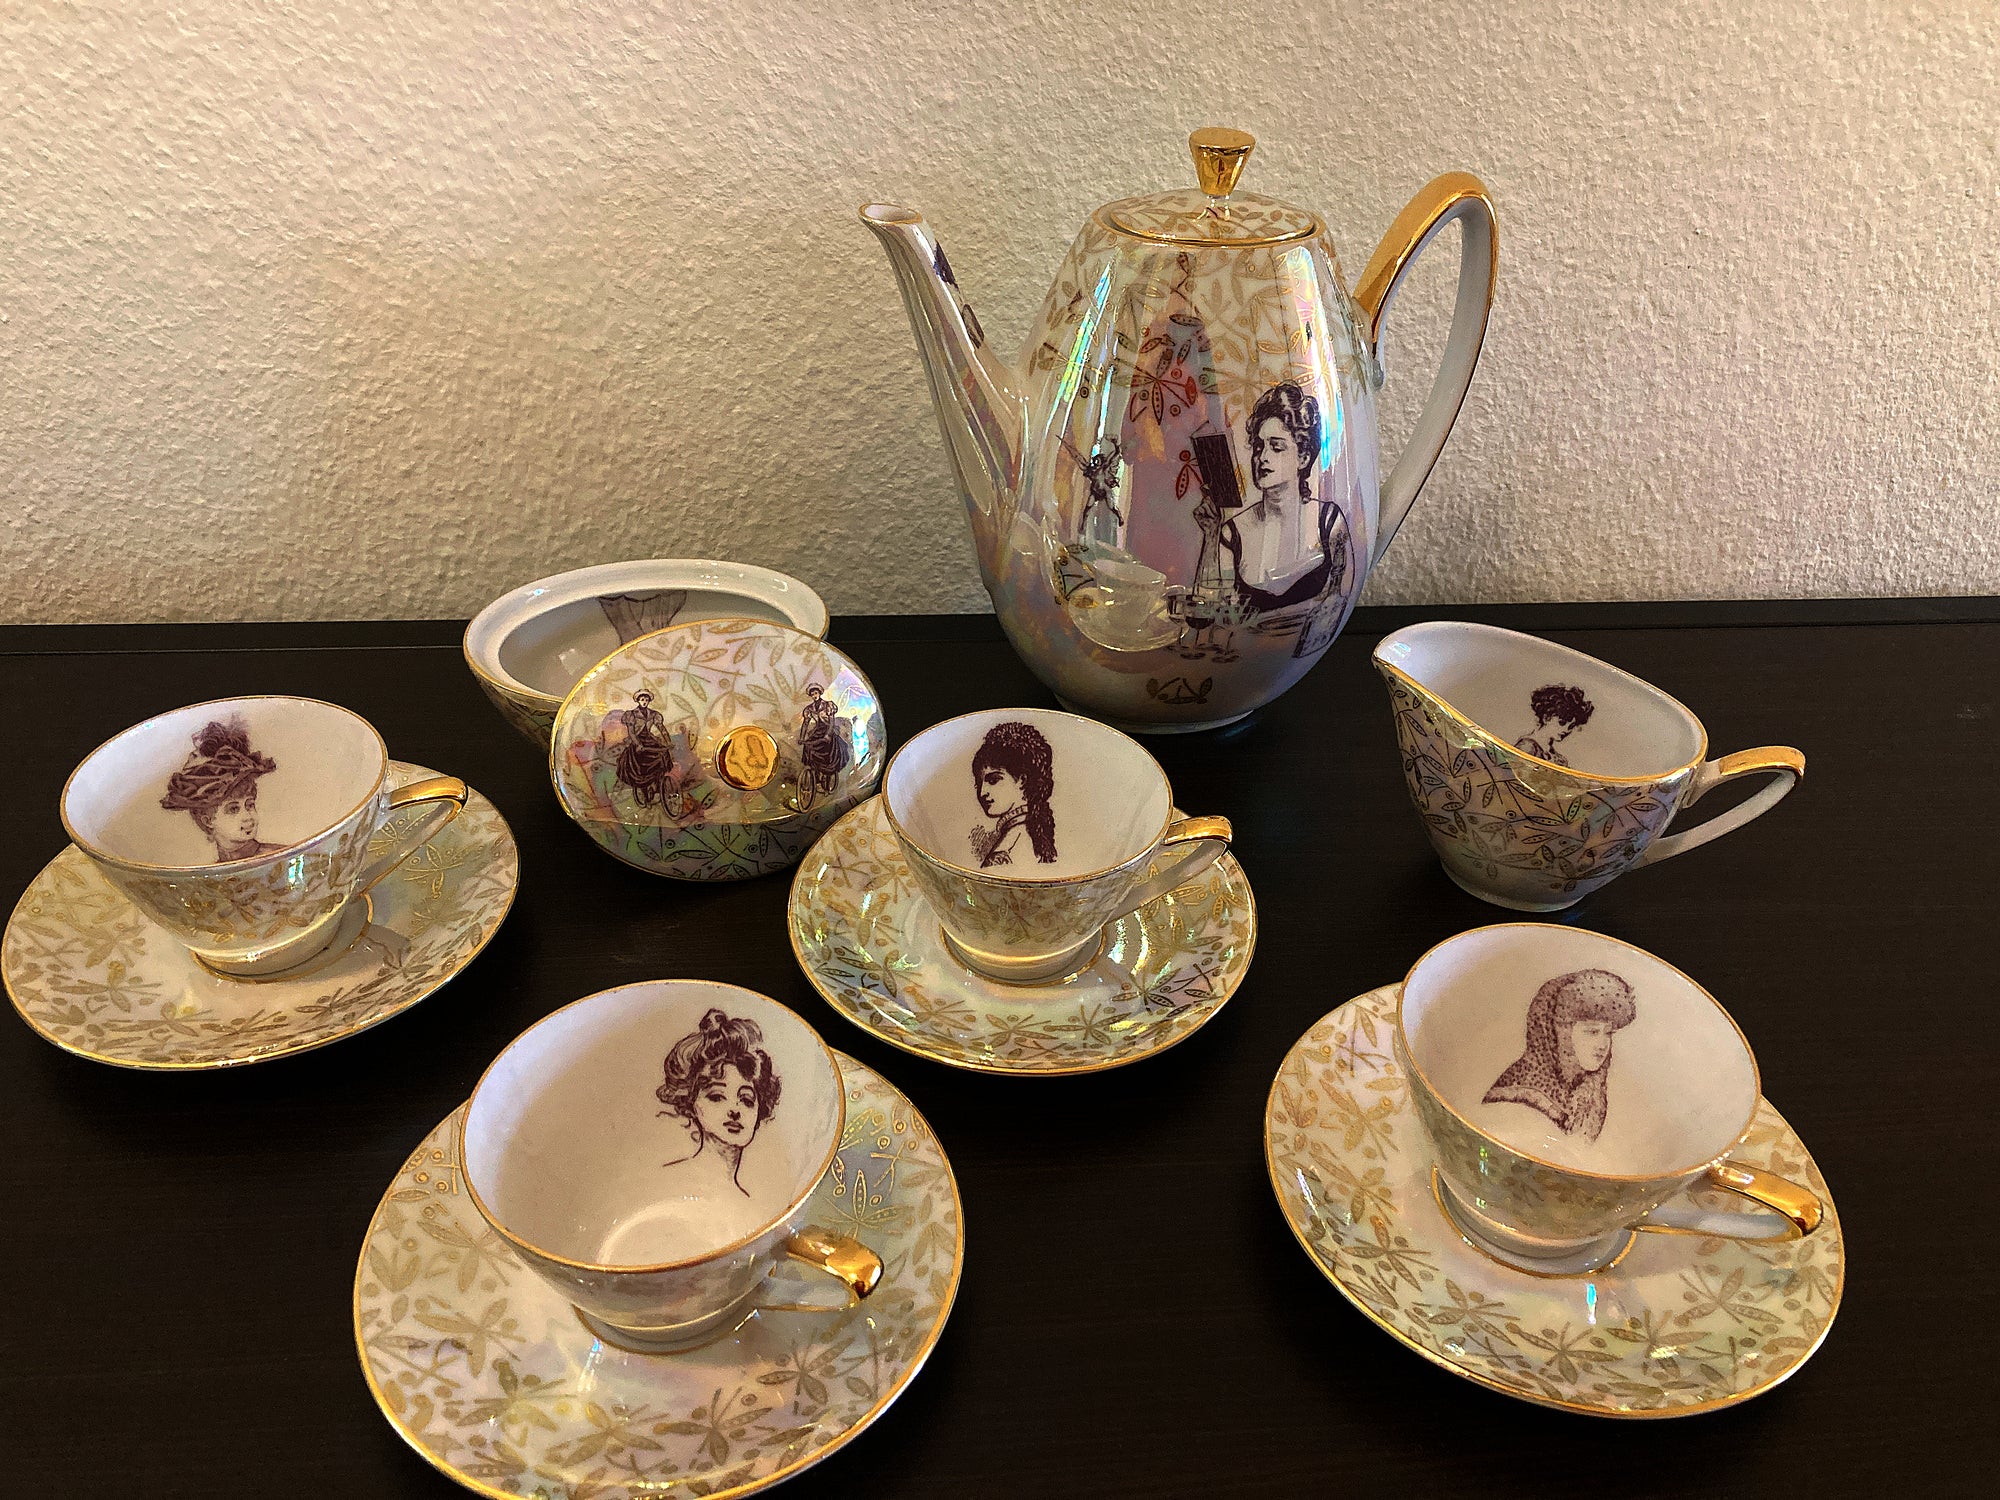 "Starke Frauen, stolze Damen" Vintage Kaffee-Set in Perlmutt-Glasur mit Goldrand